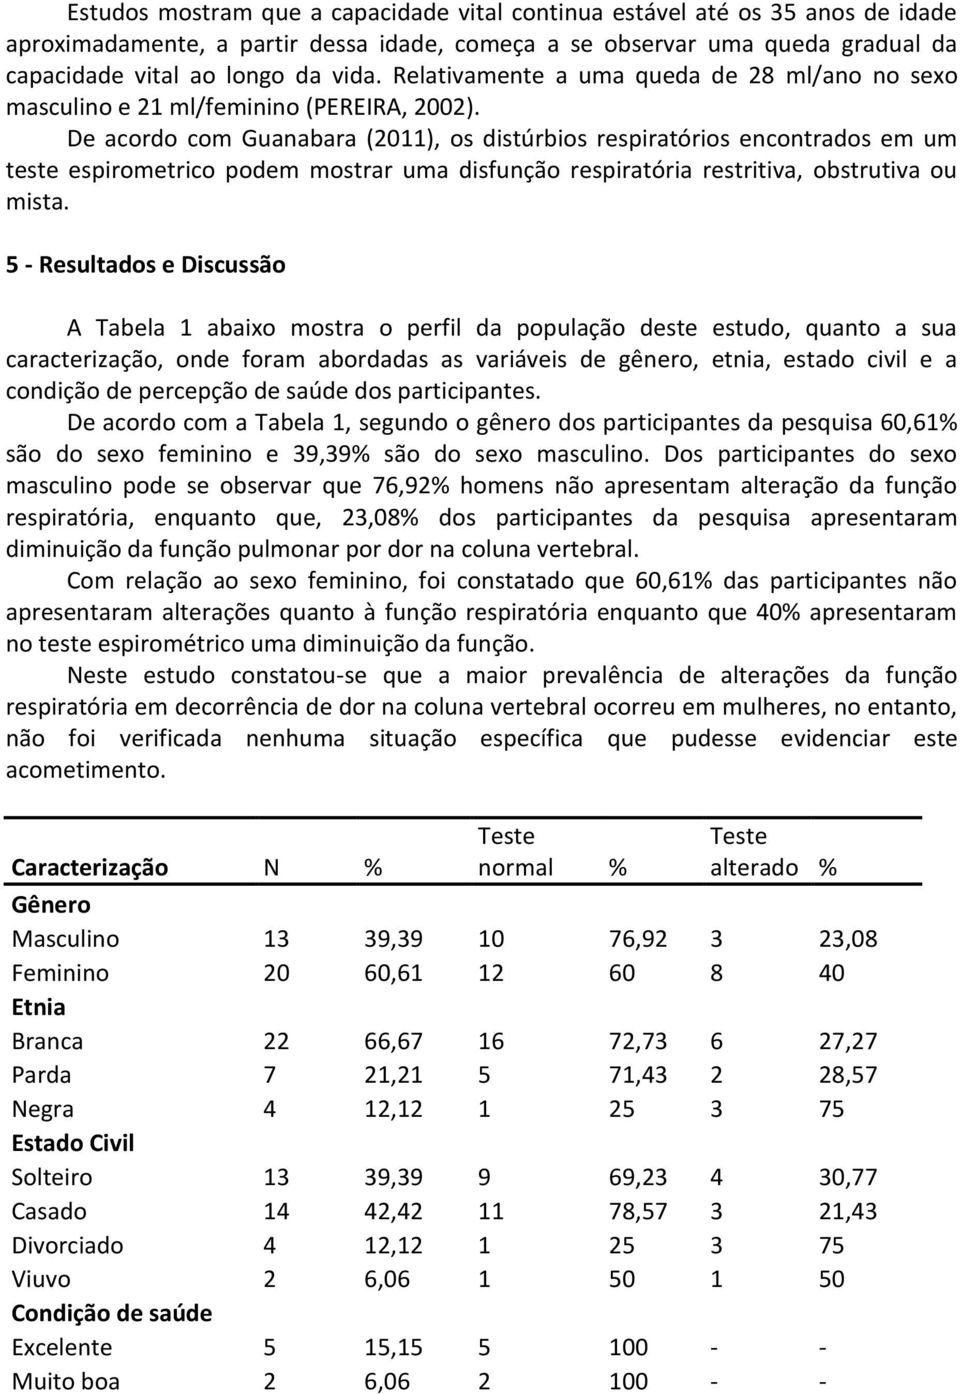 De acordo com Guanabara (2011), os distúrbios respiratórios encontrados em um teste espirometrico podem mostrar uma disfunção respiratória restritiva, obstrutiva ou mista.